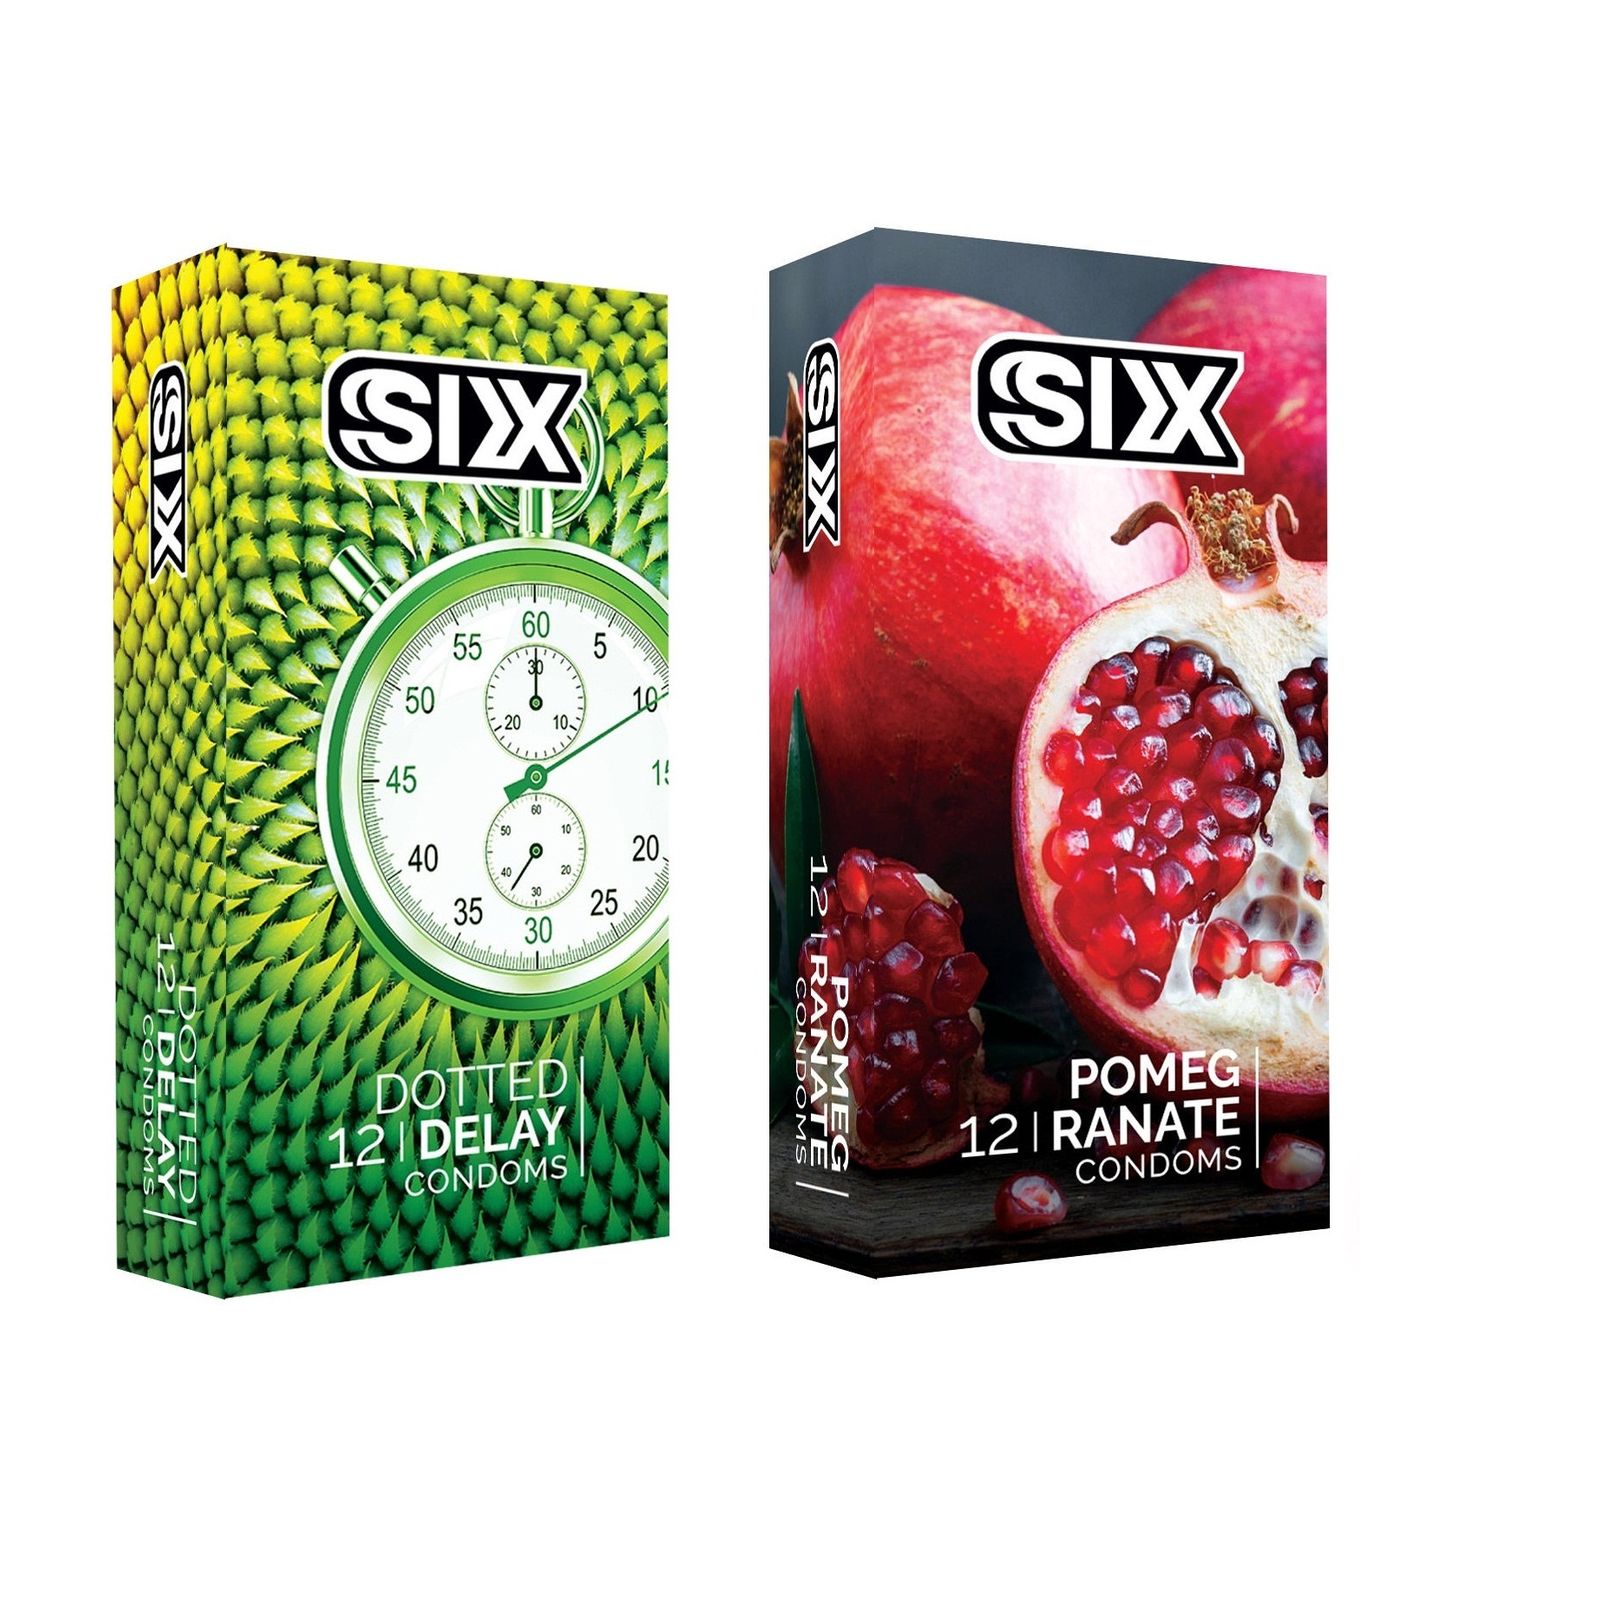 کاندوم سیکس مدل DottedDelay بسته 12 عددی به همراه کاندوم سیکس مدل Pomegranate بسته 12 عددی -  - 1